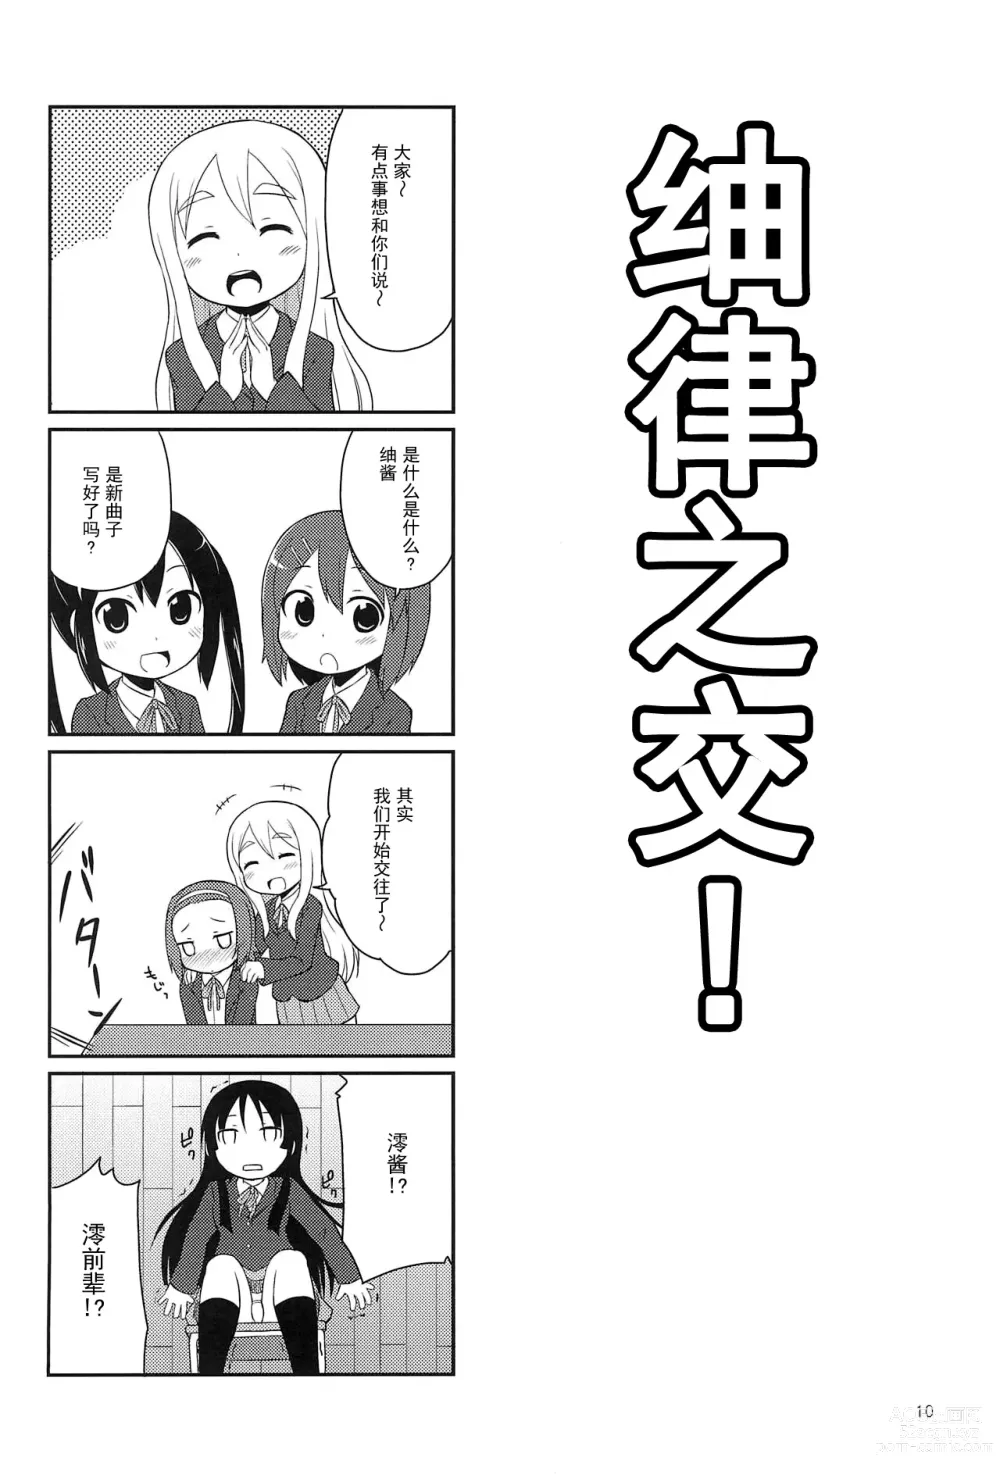 Page 10 of doujinshi Youta Tanpenshuu Yoru no Uta